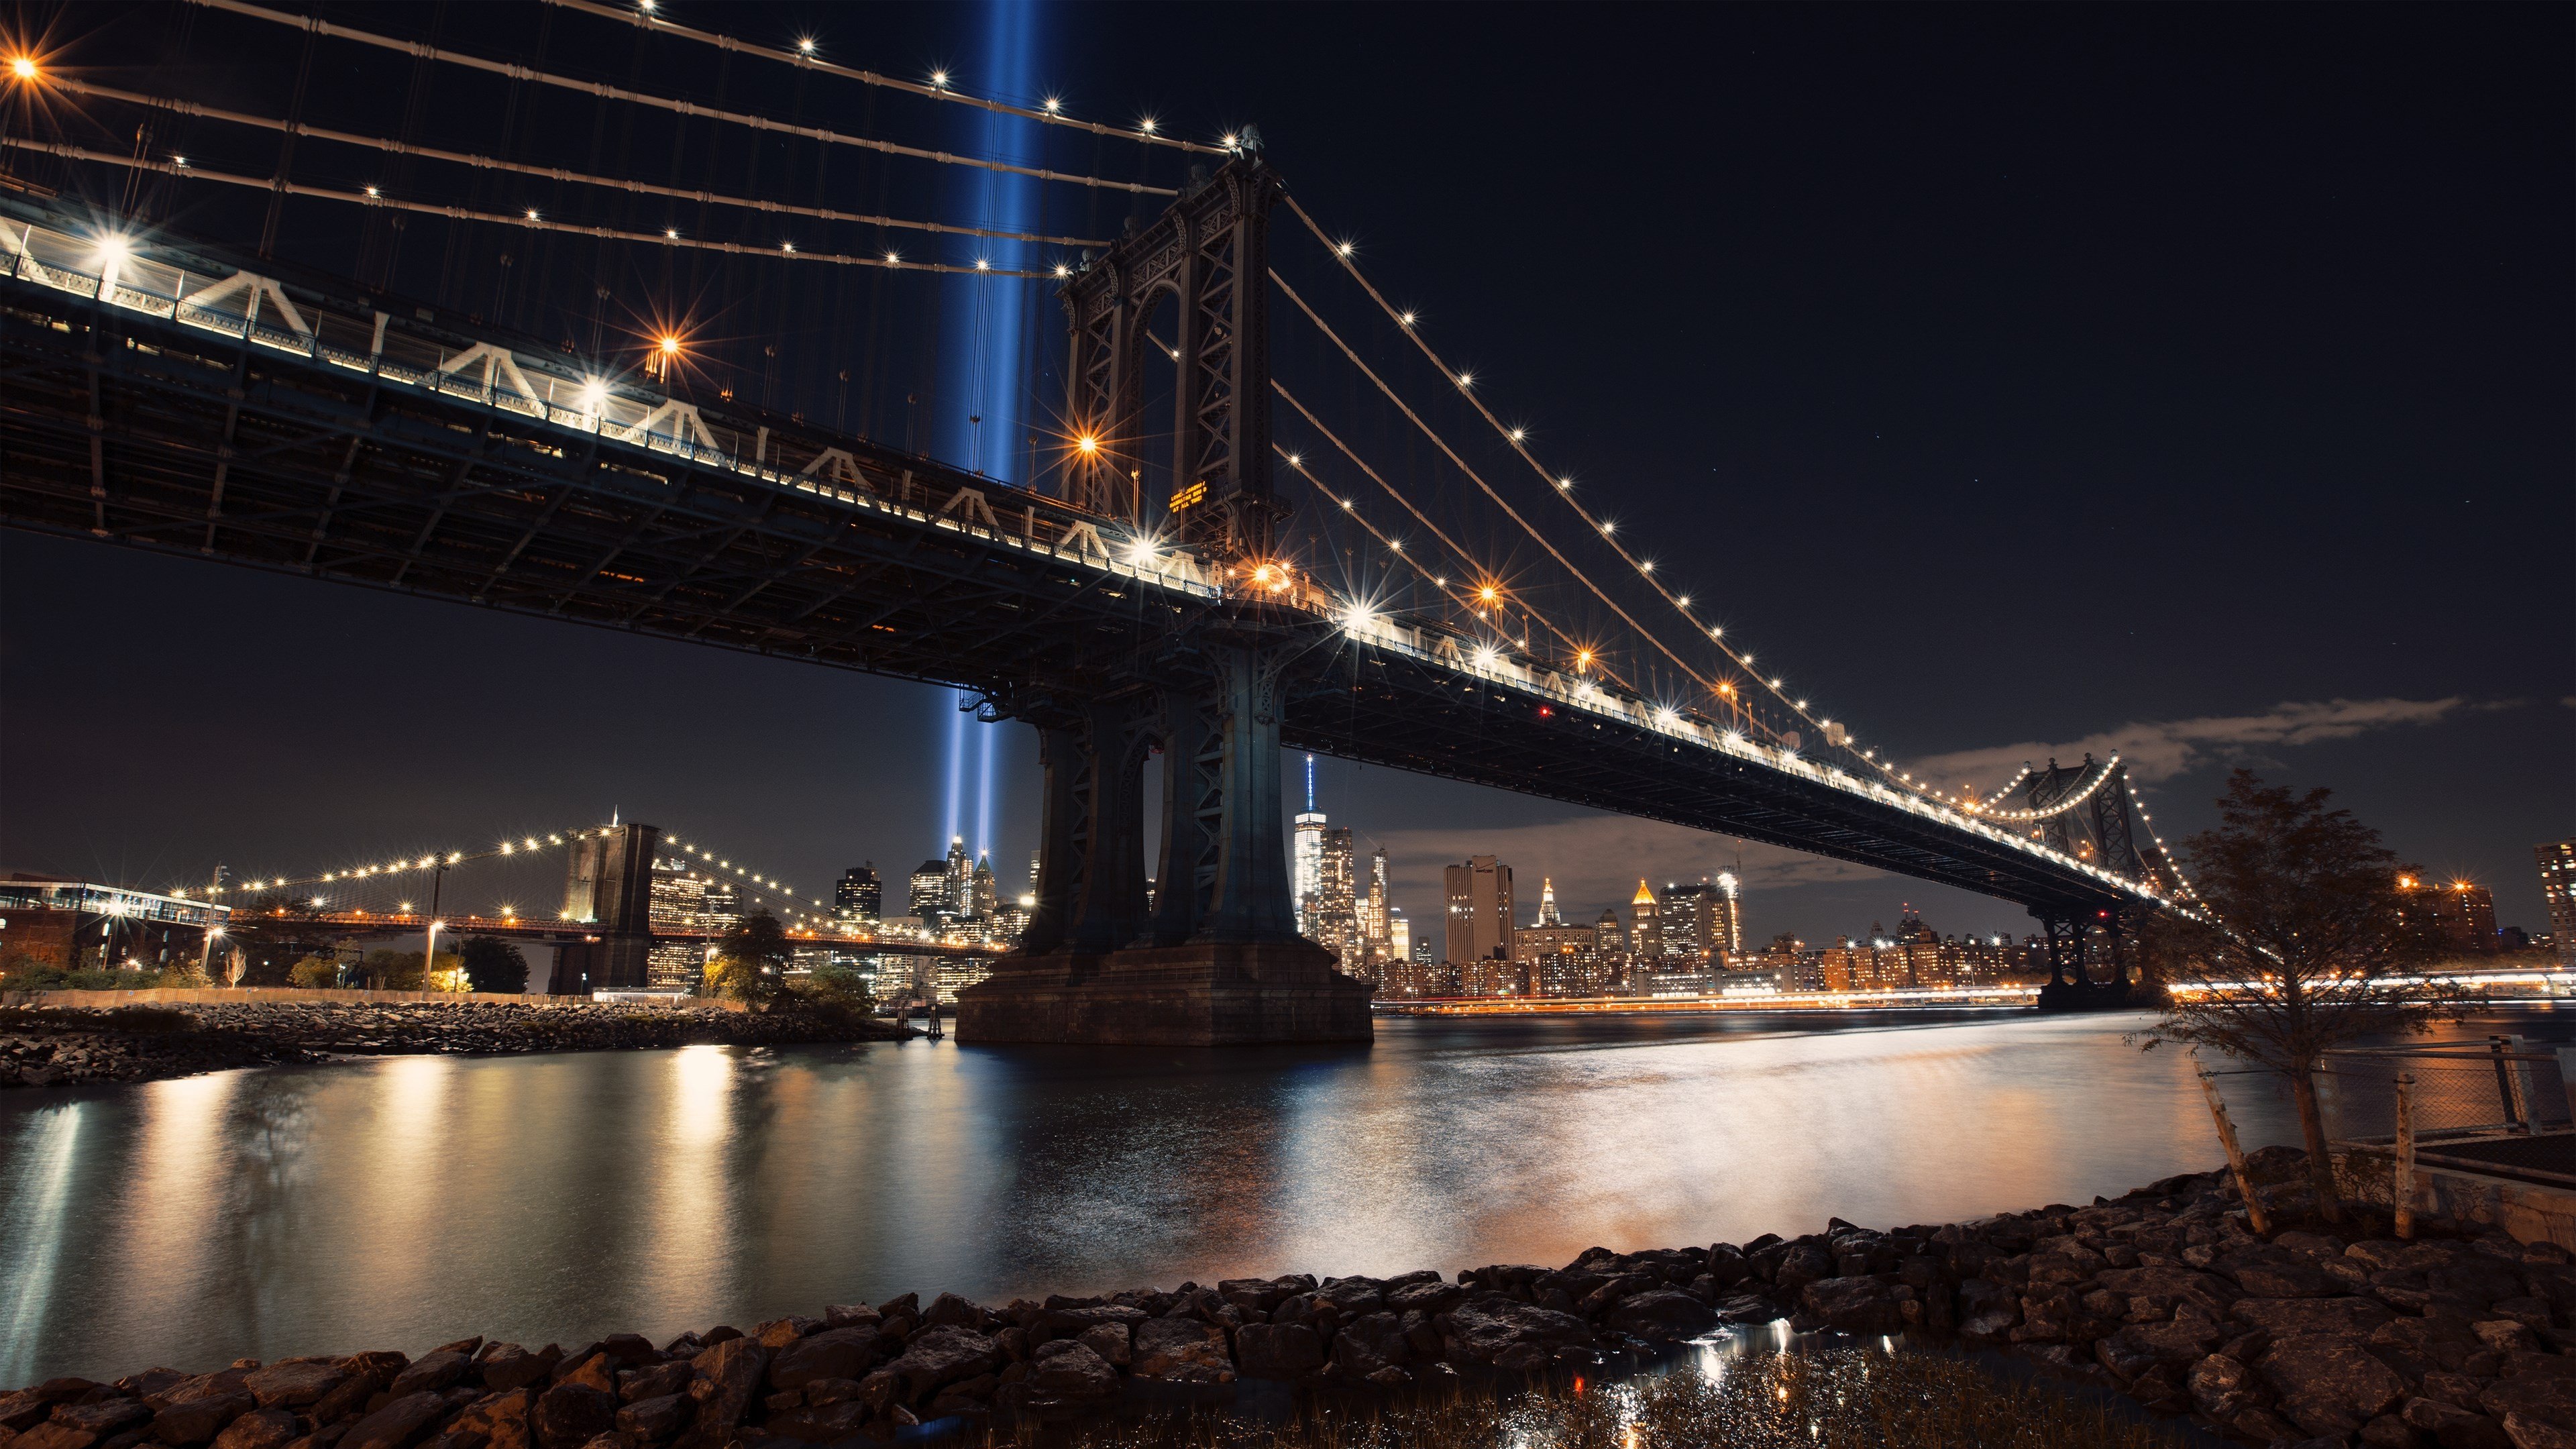 Обои на стол 1600 900. Манхэттенский мост фон. Красивые обои. Качественные обои. Заставка на рабочий стол.